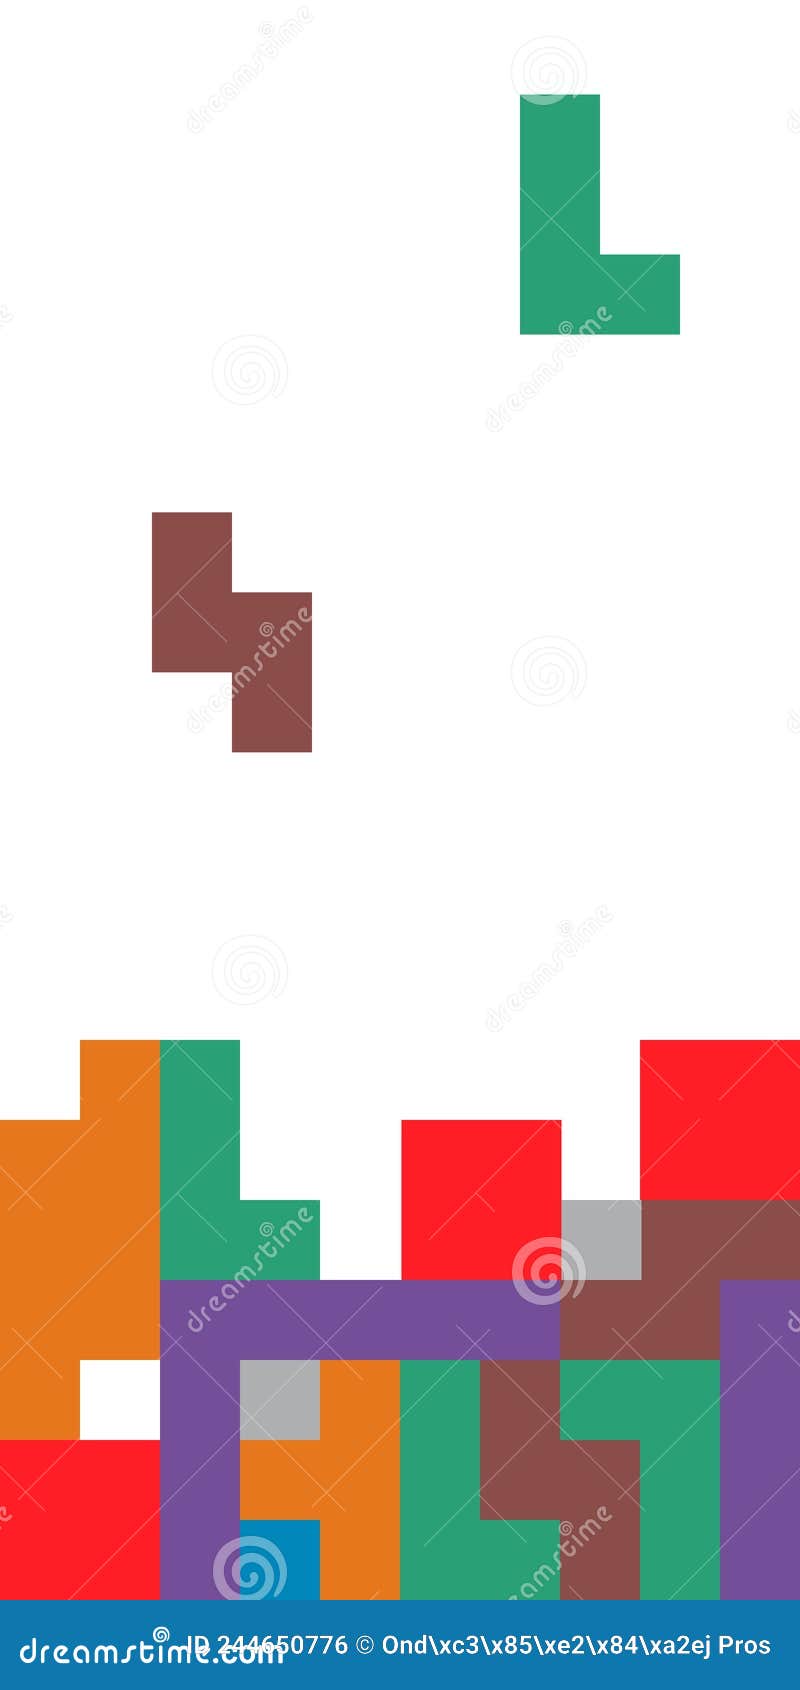 Conjunto de blocos coloridos para ilustração vetorial de jogo